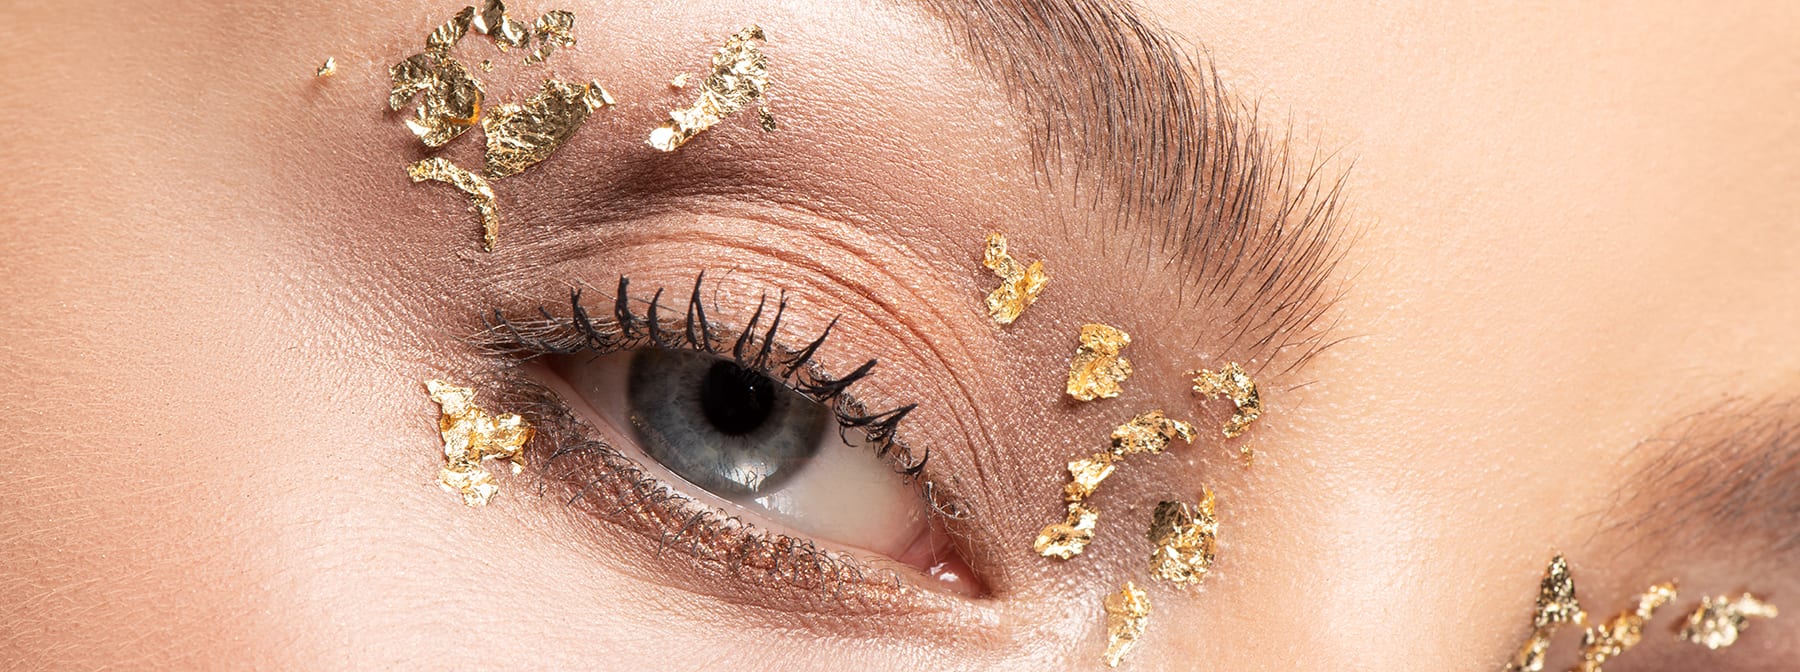 GLOSSY Tutorial: Hebe deinen Make-up-Look mit Blattgold auf ein neues Level!